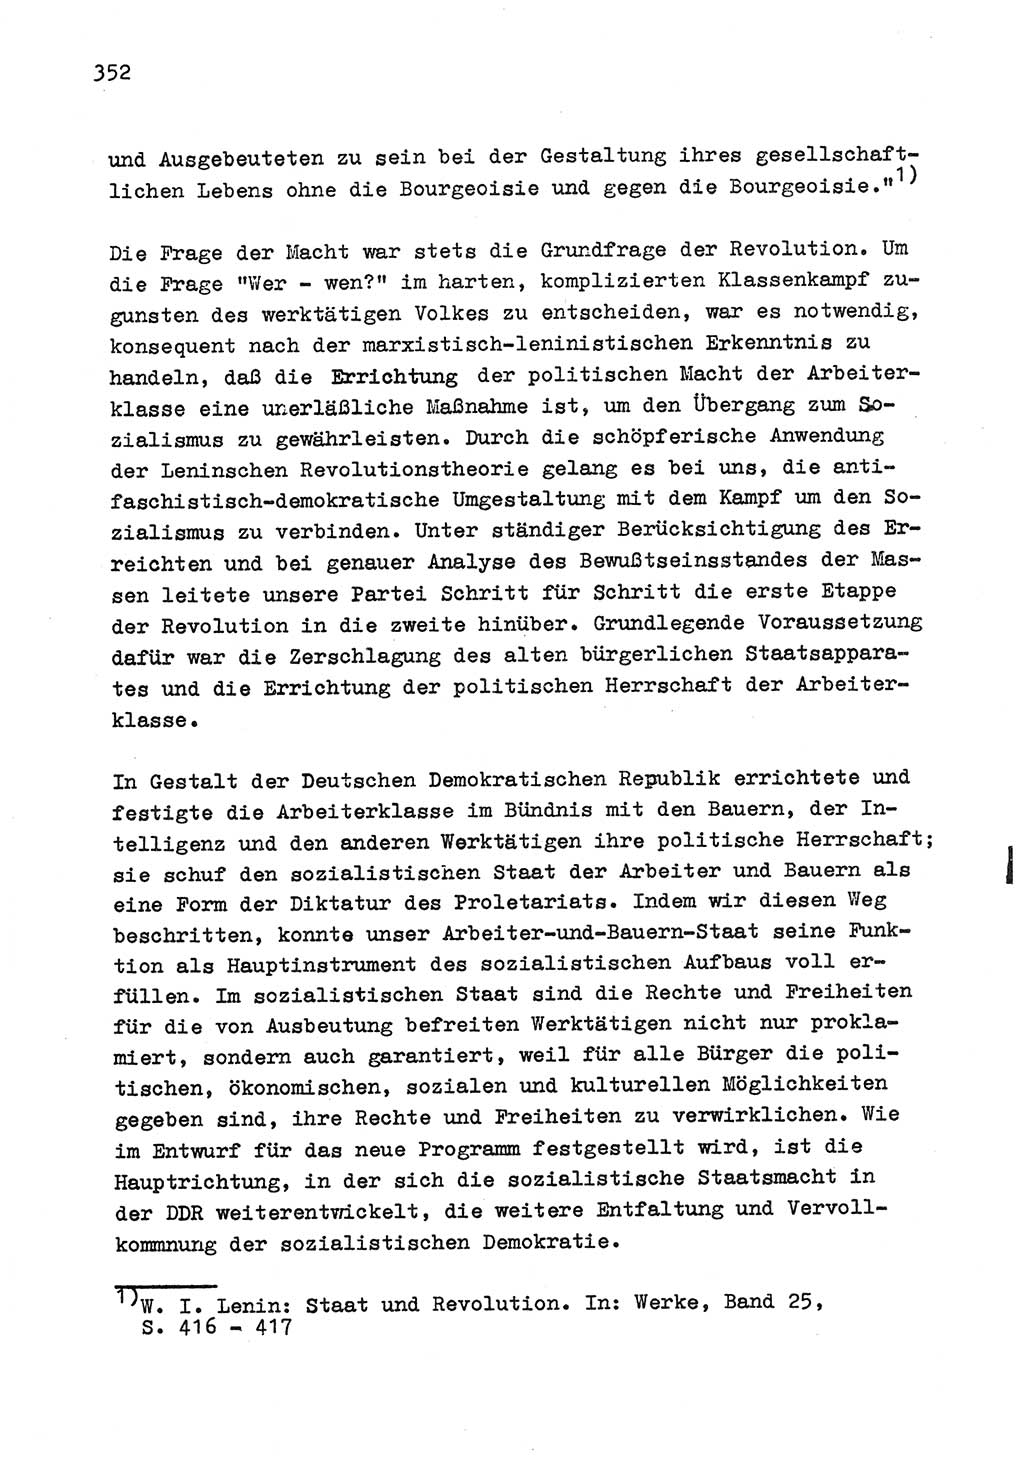 Zu Fragen der Parteiarbeit [Sozialistische Einheitspartei Deutschlands (SED) Deutsche Demokratische Republik (DDR)] 1979, Seite 352 (Fr. PA SED DDR 1979, S. 352)